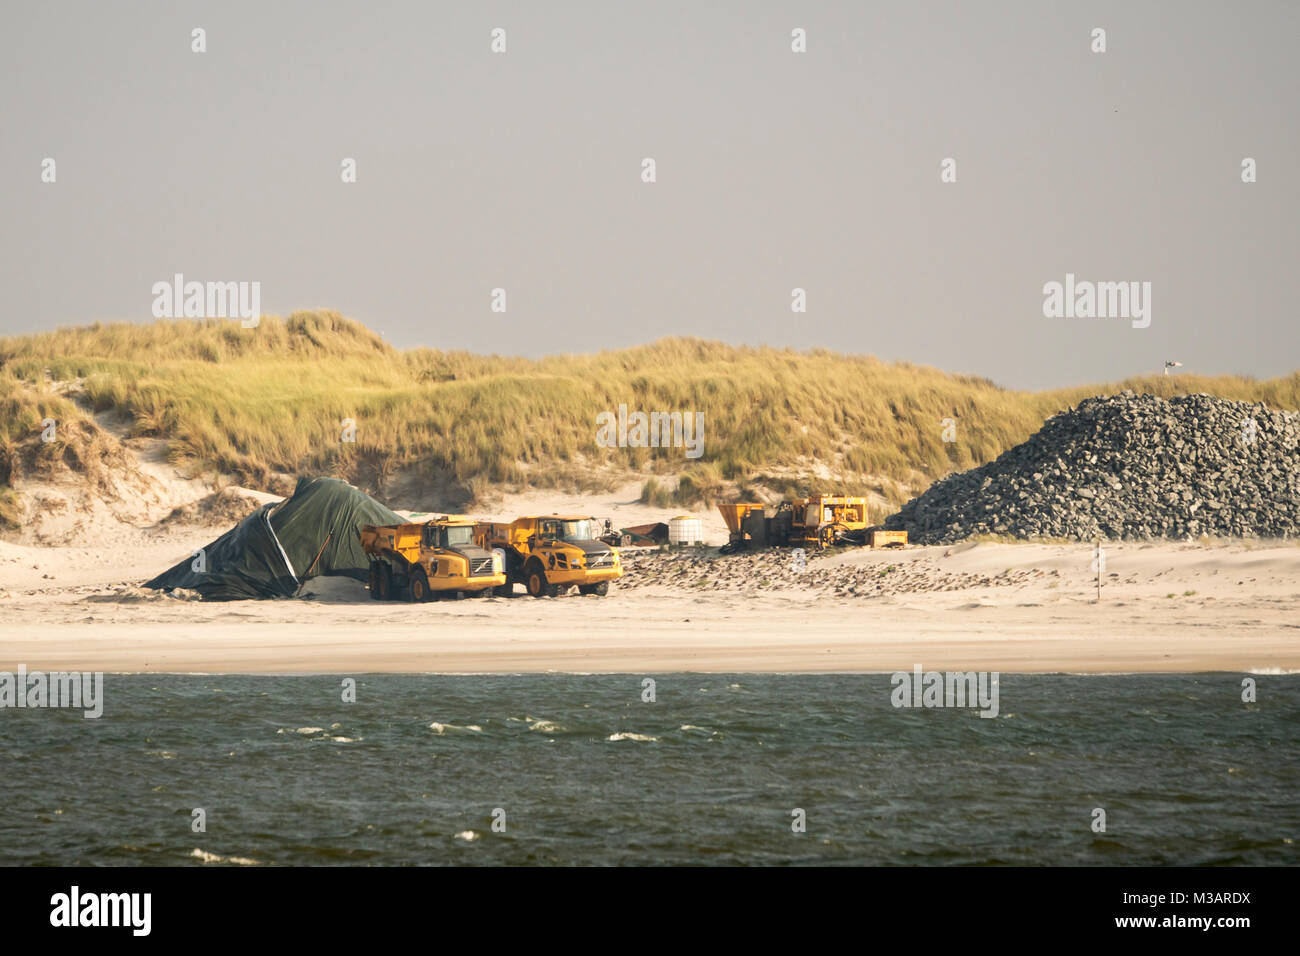 Baumaschinen stehen am Strand bereit für den Küstenschutz der Insel Wangerooge zur Erhöhung und Verstärkung des Dorf- und Ostgrodendeiches Foto Stock